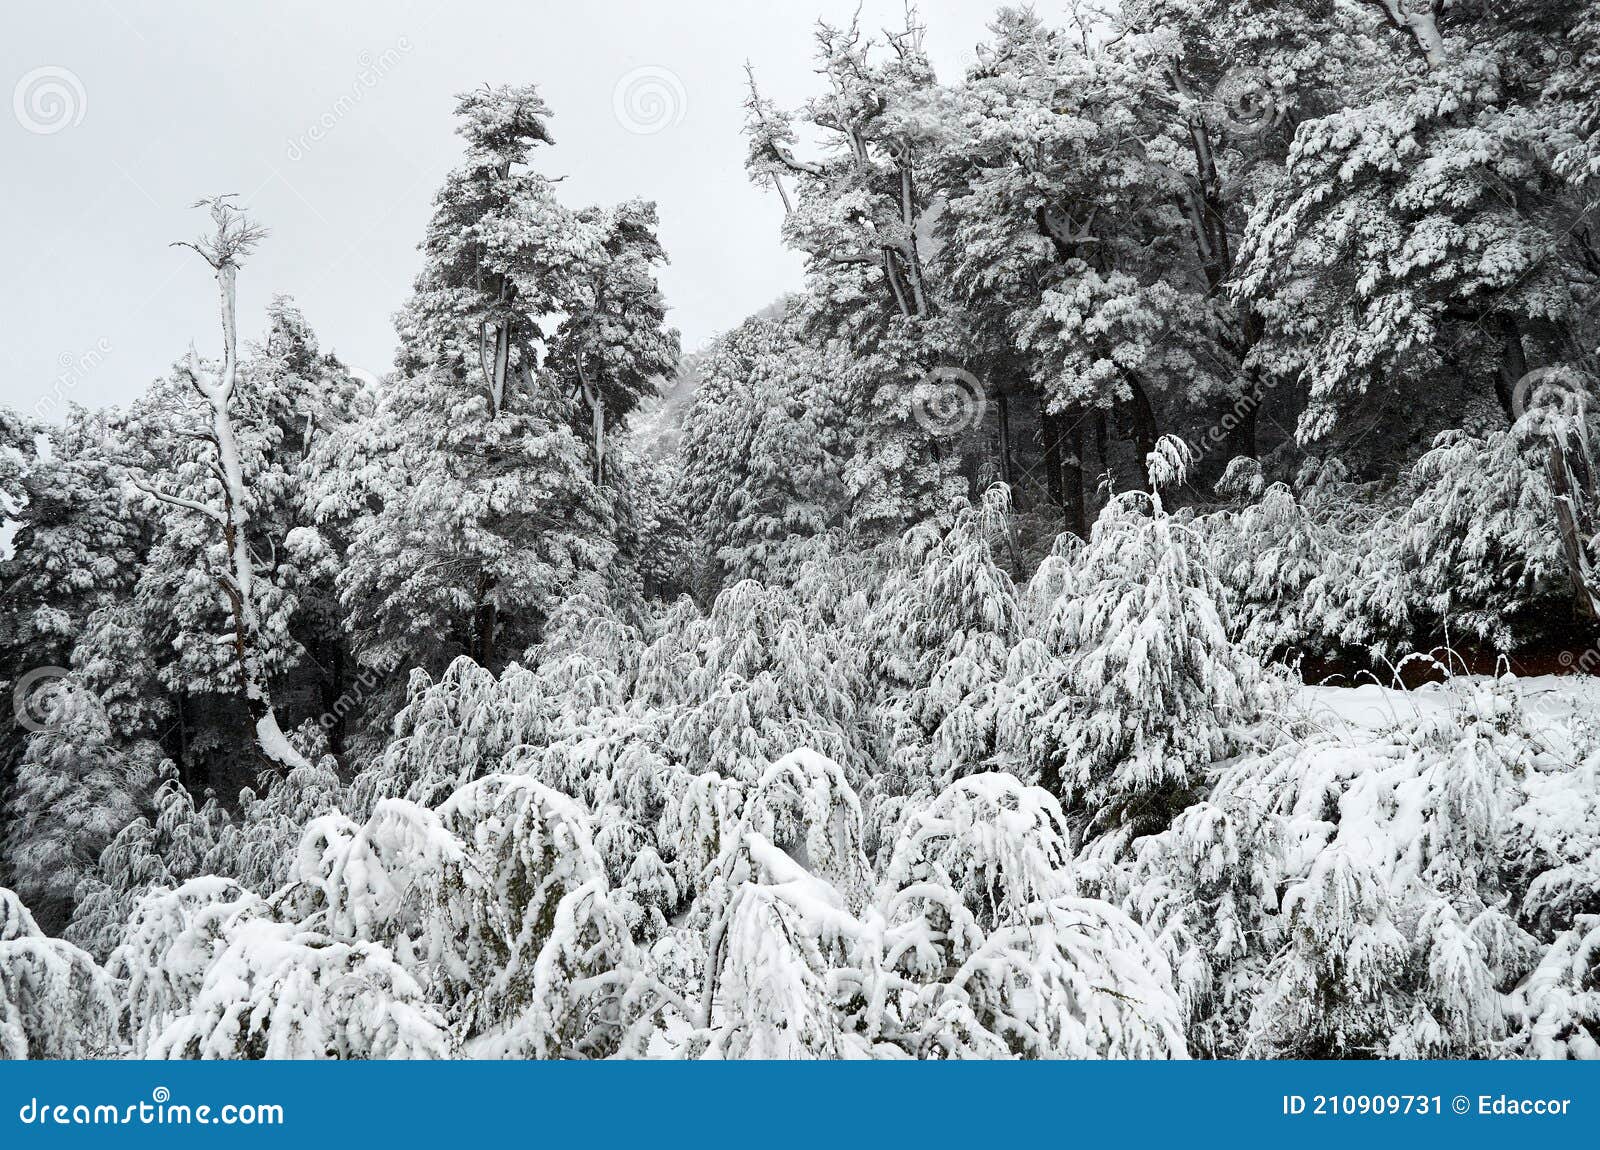 a view of white snowy forest from cable car on cero bayo bayo hill, touristic destination in villa la angostura, neuquen,